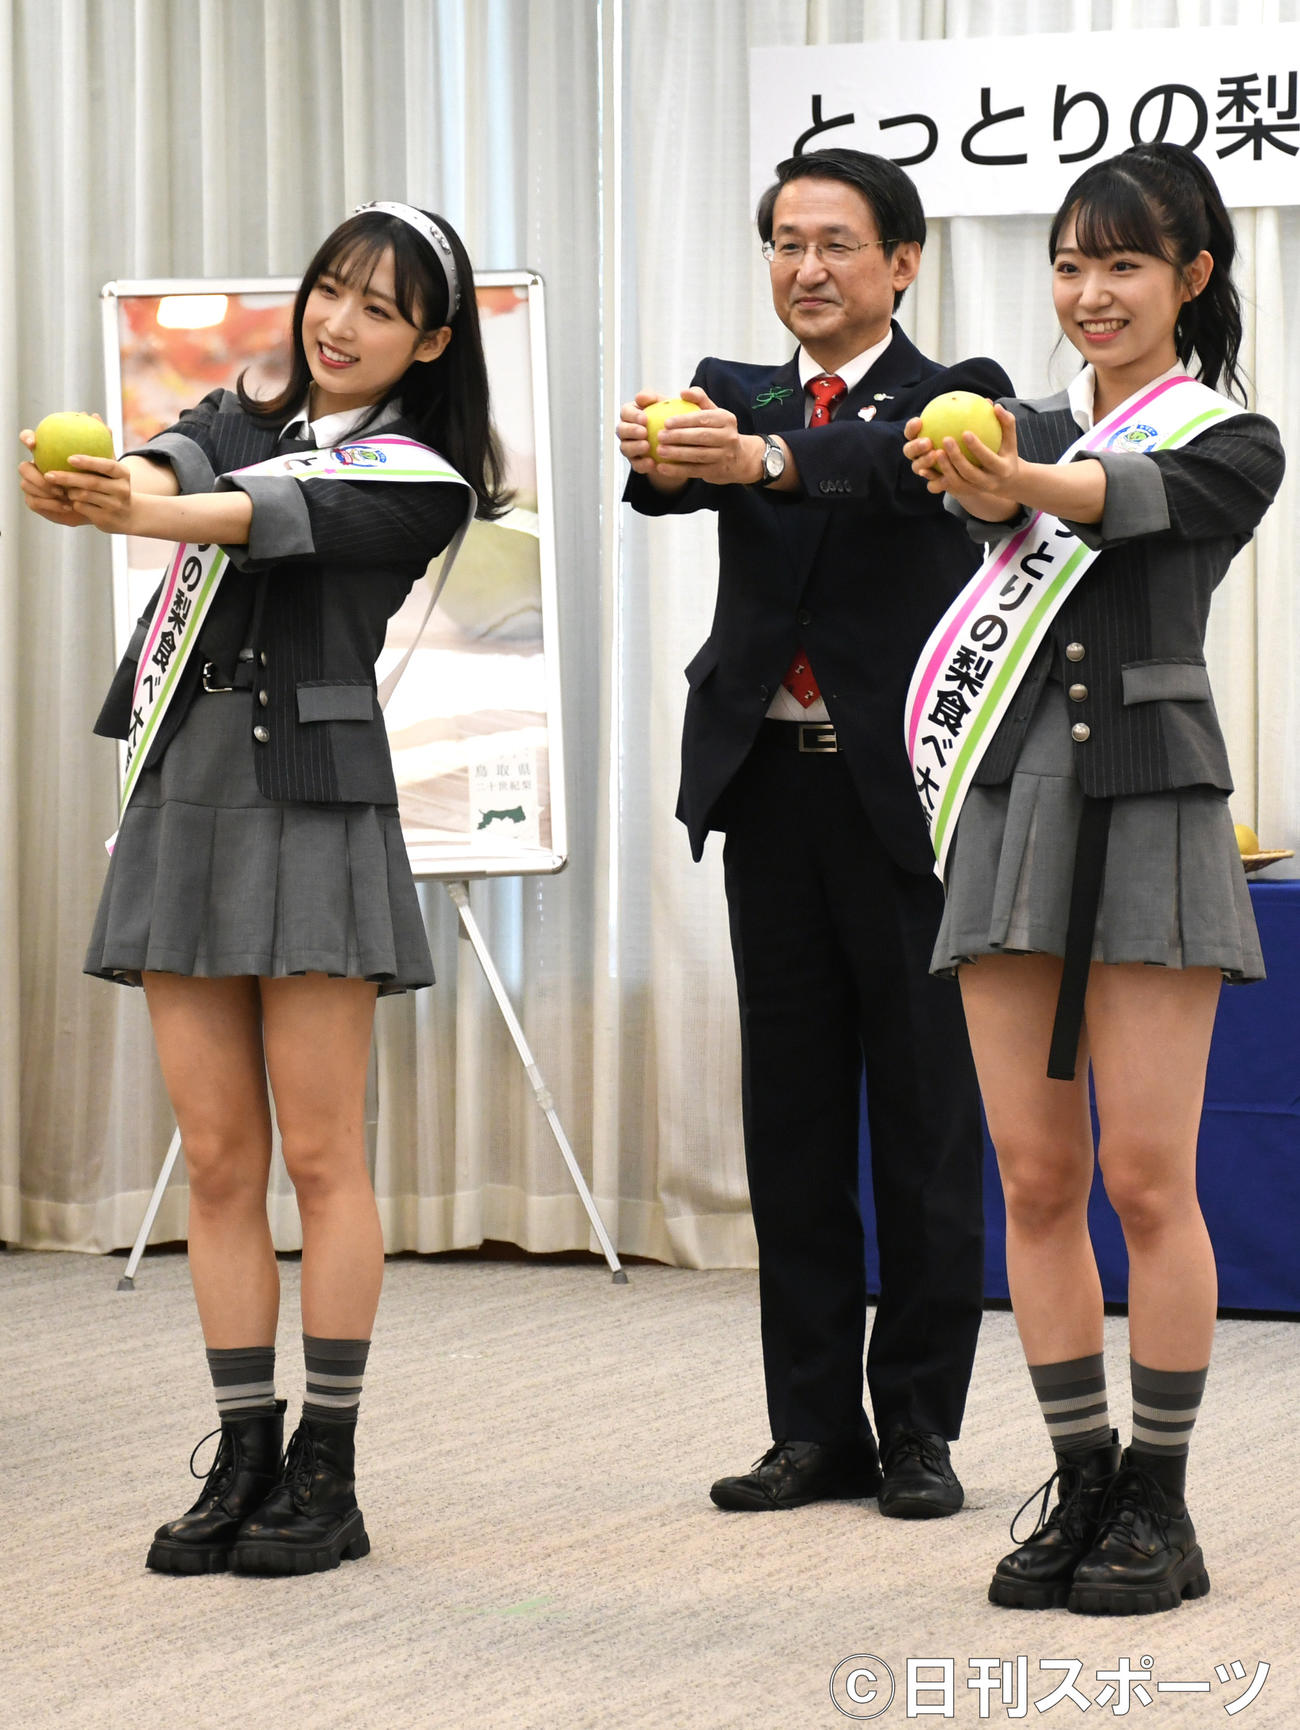 「とっとりの梨食べ大使」任命式で梨ダンスを披露するAKB48の、左から小栗有以、平井伸治知事、山内瑞葵（撮影・大友陽平）